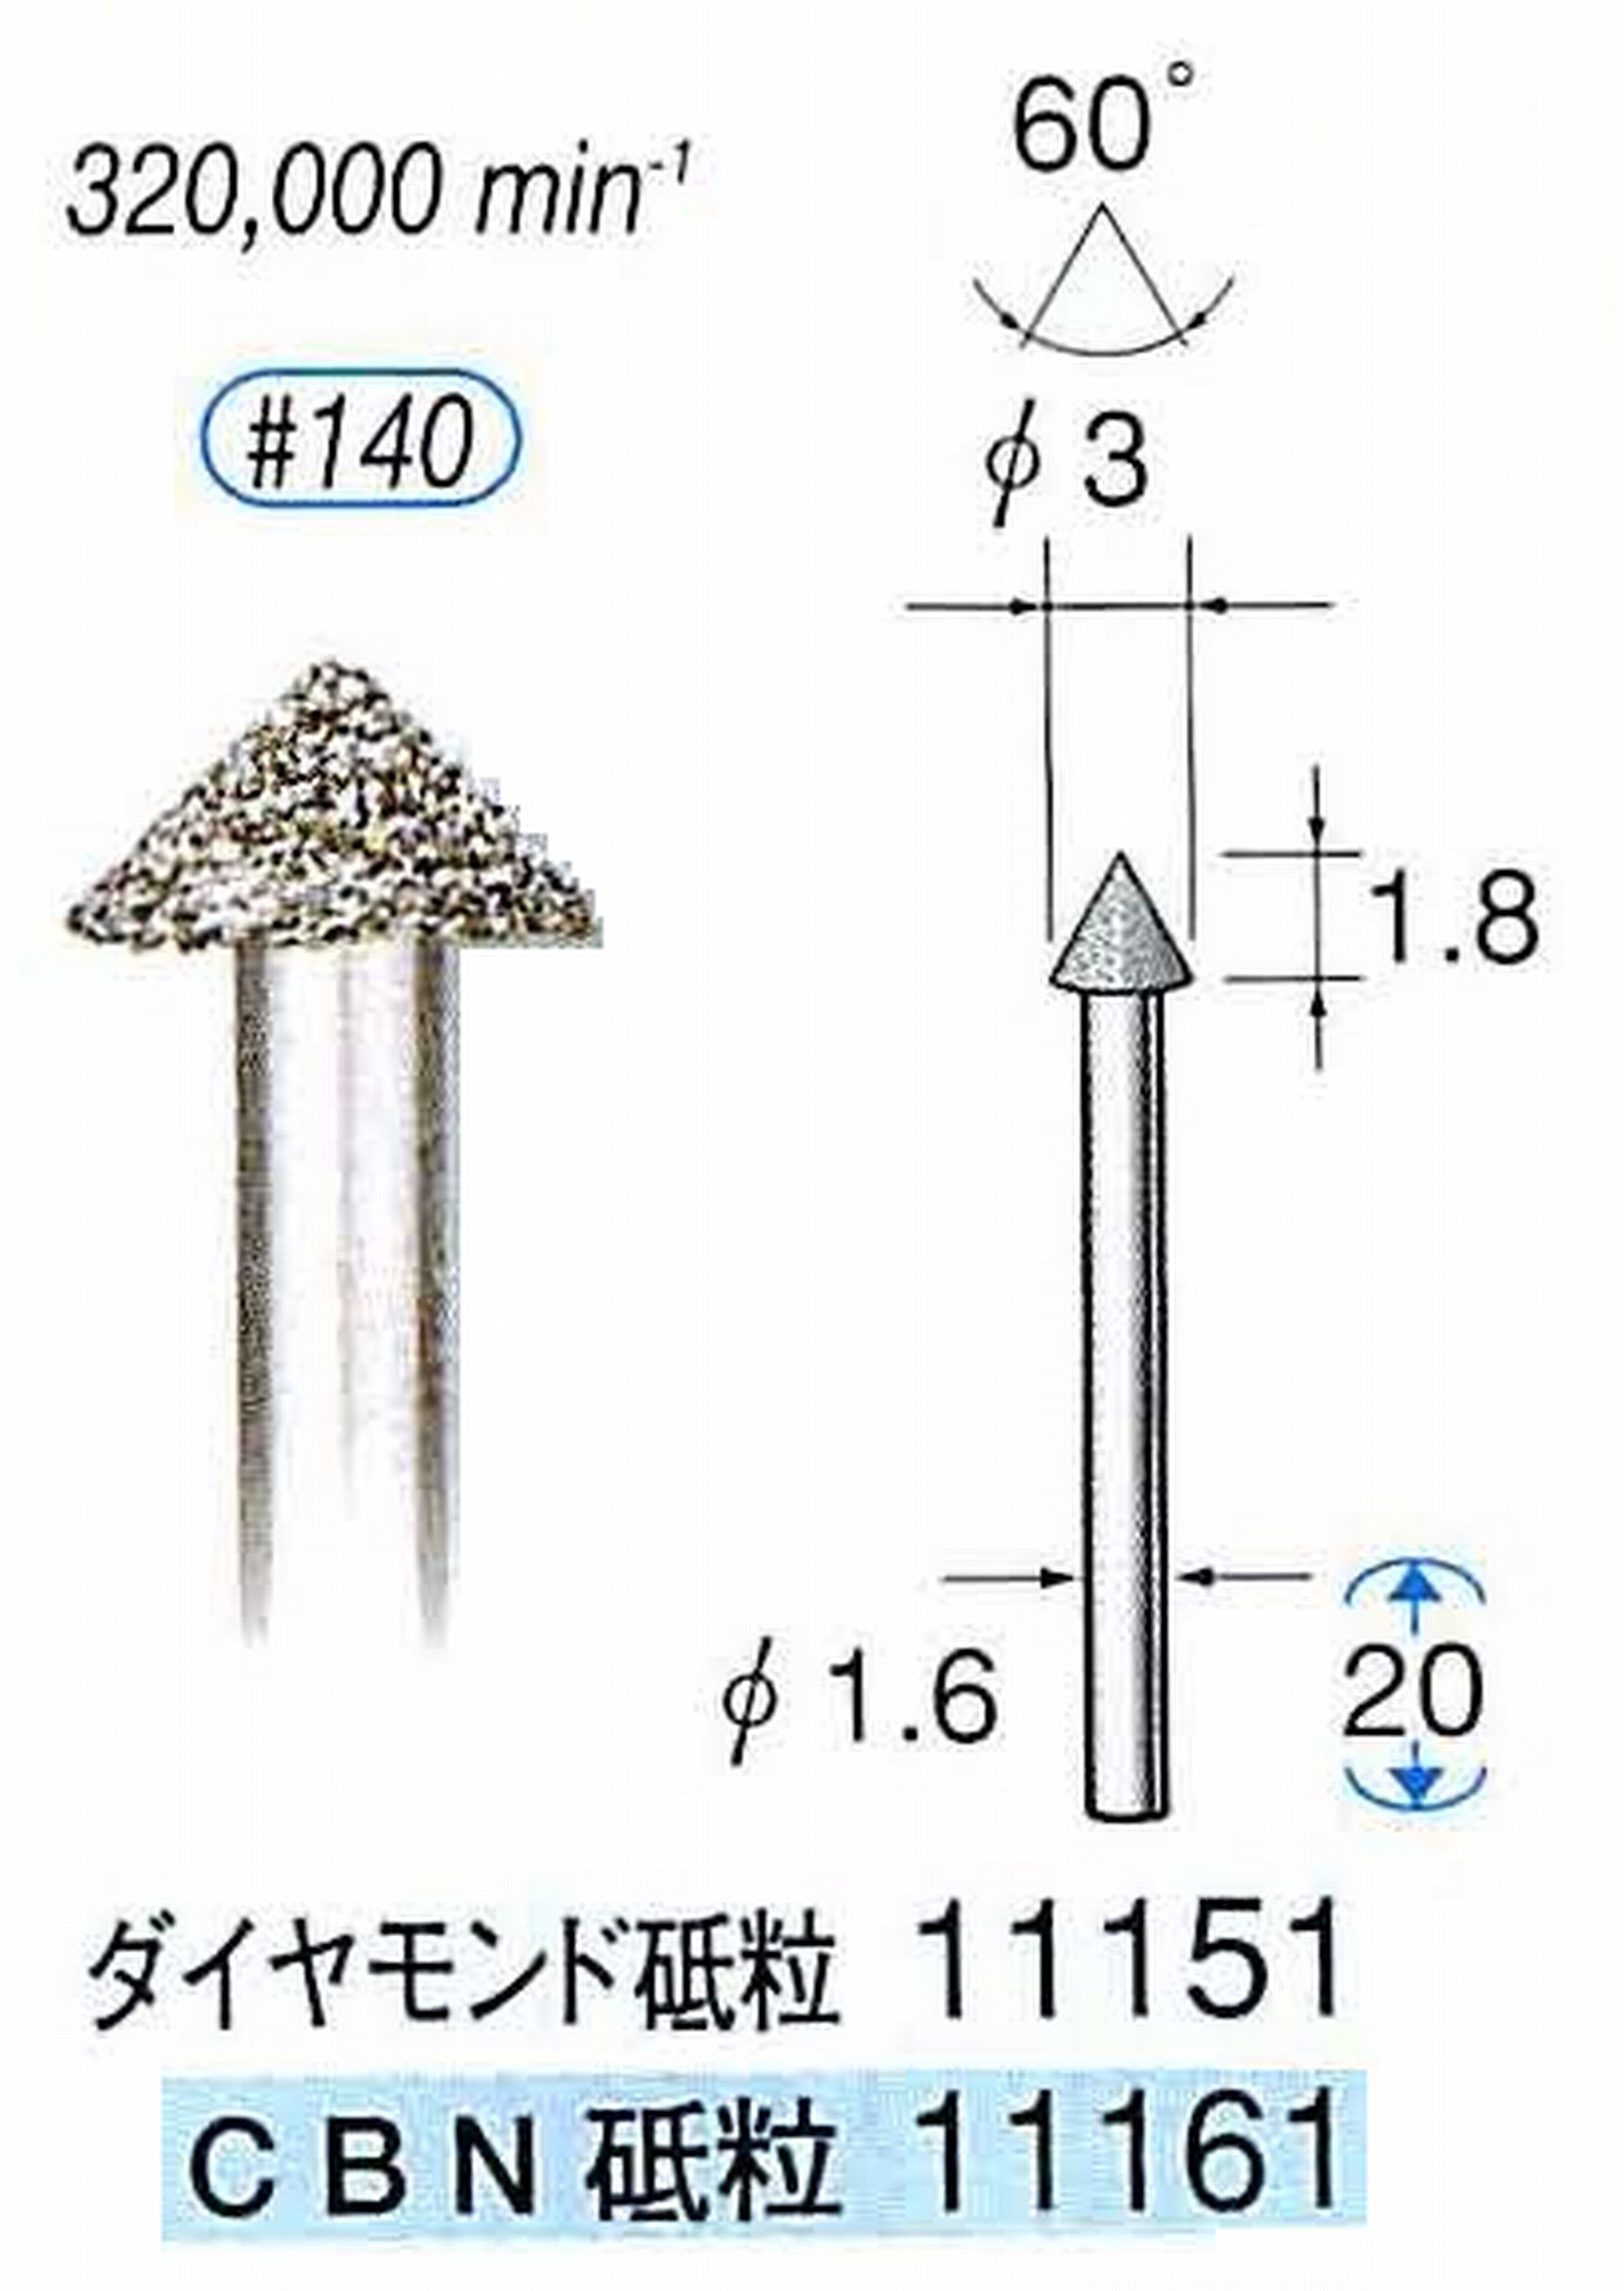 ナカニシ/NAKANISHI 電着ダイヤモンドバー(ミニチュアタイプ)ダイヤモンド砥粒 軸径(シャンク)φ1.6mm 11151